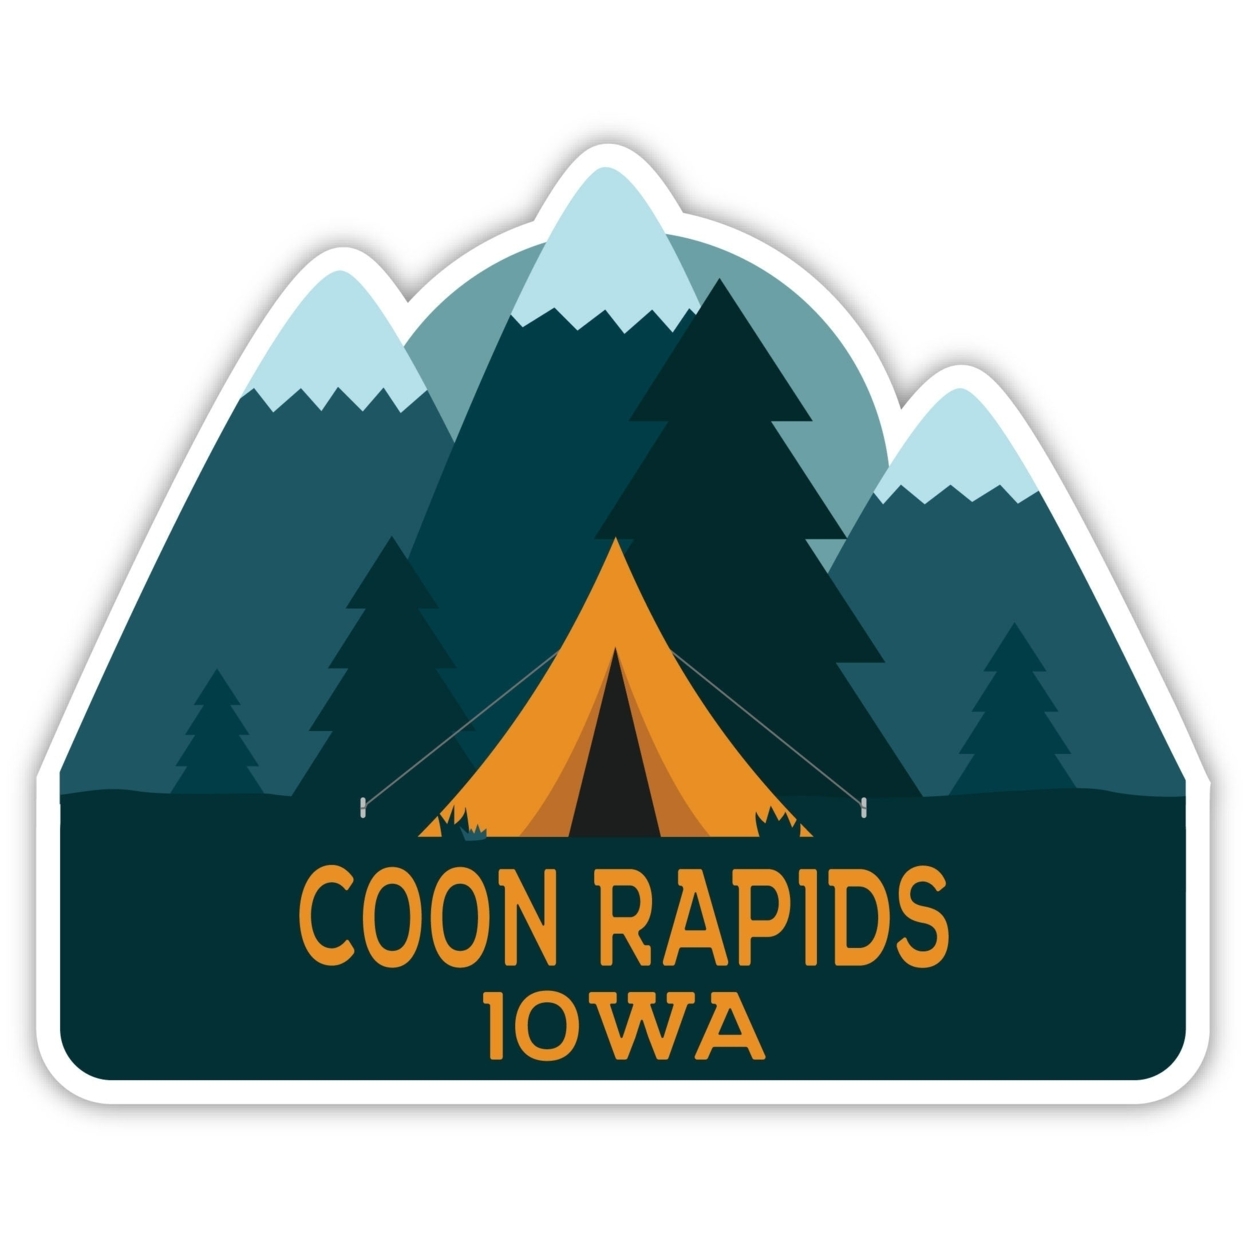 Coon Rapids Iowa Souvenir Decorative Stickers (Choose Theme And Size) - Single Unit, 10-Inch, Tent